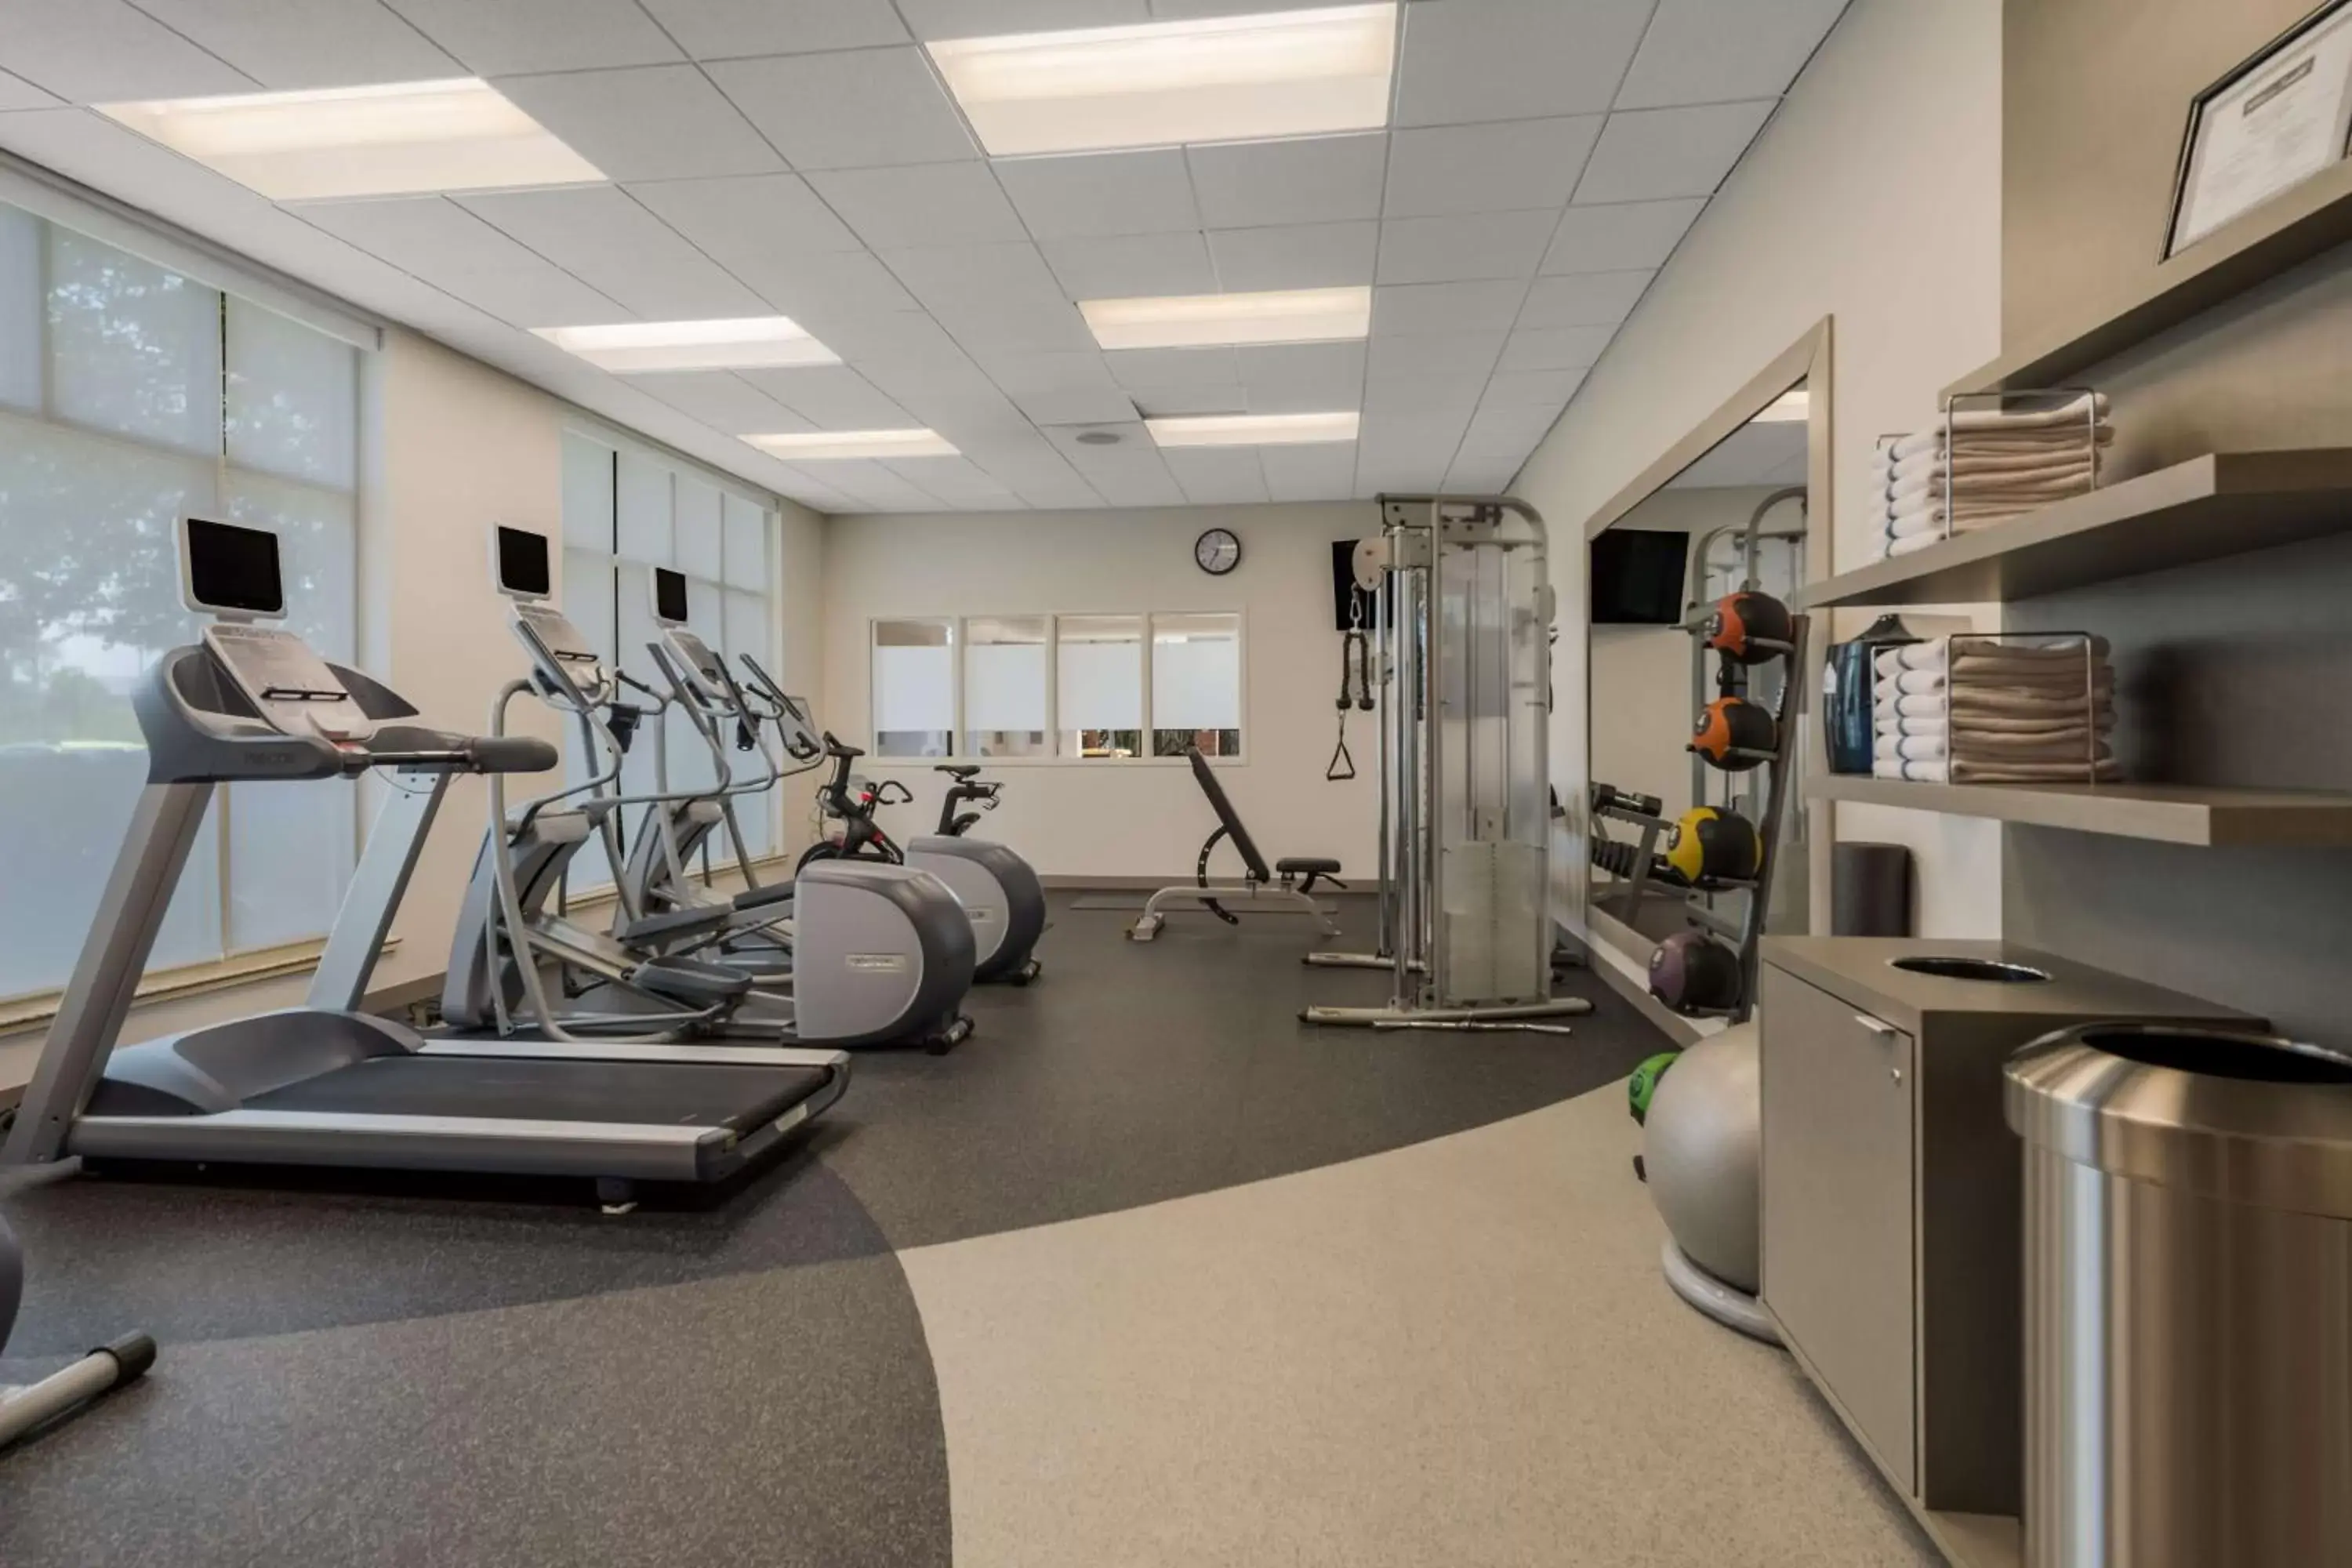 Fitness centre/facilities, Fitness Center/Facilities in Hilton Garden Inn Rockford